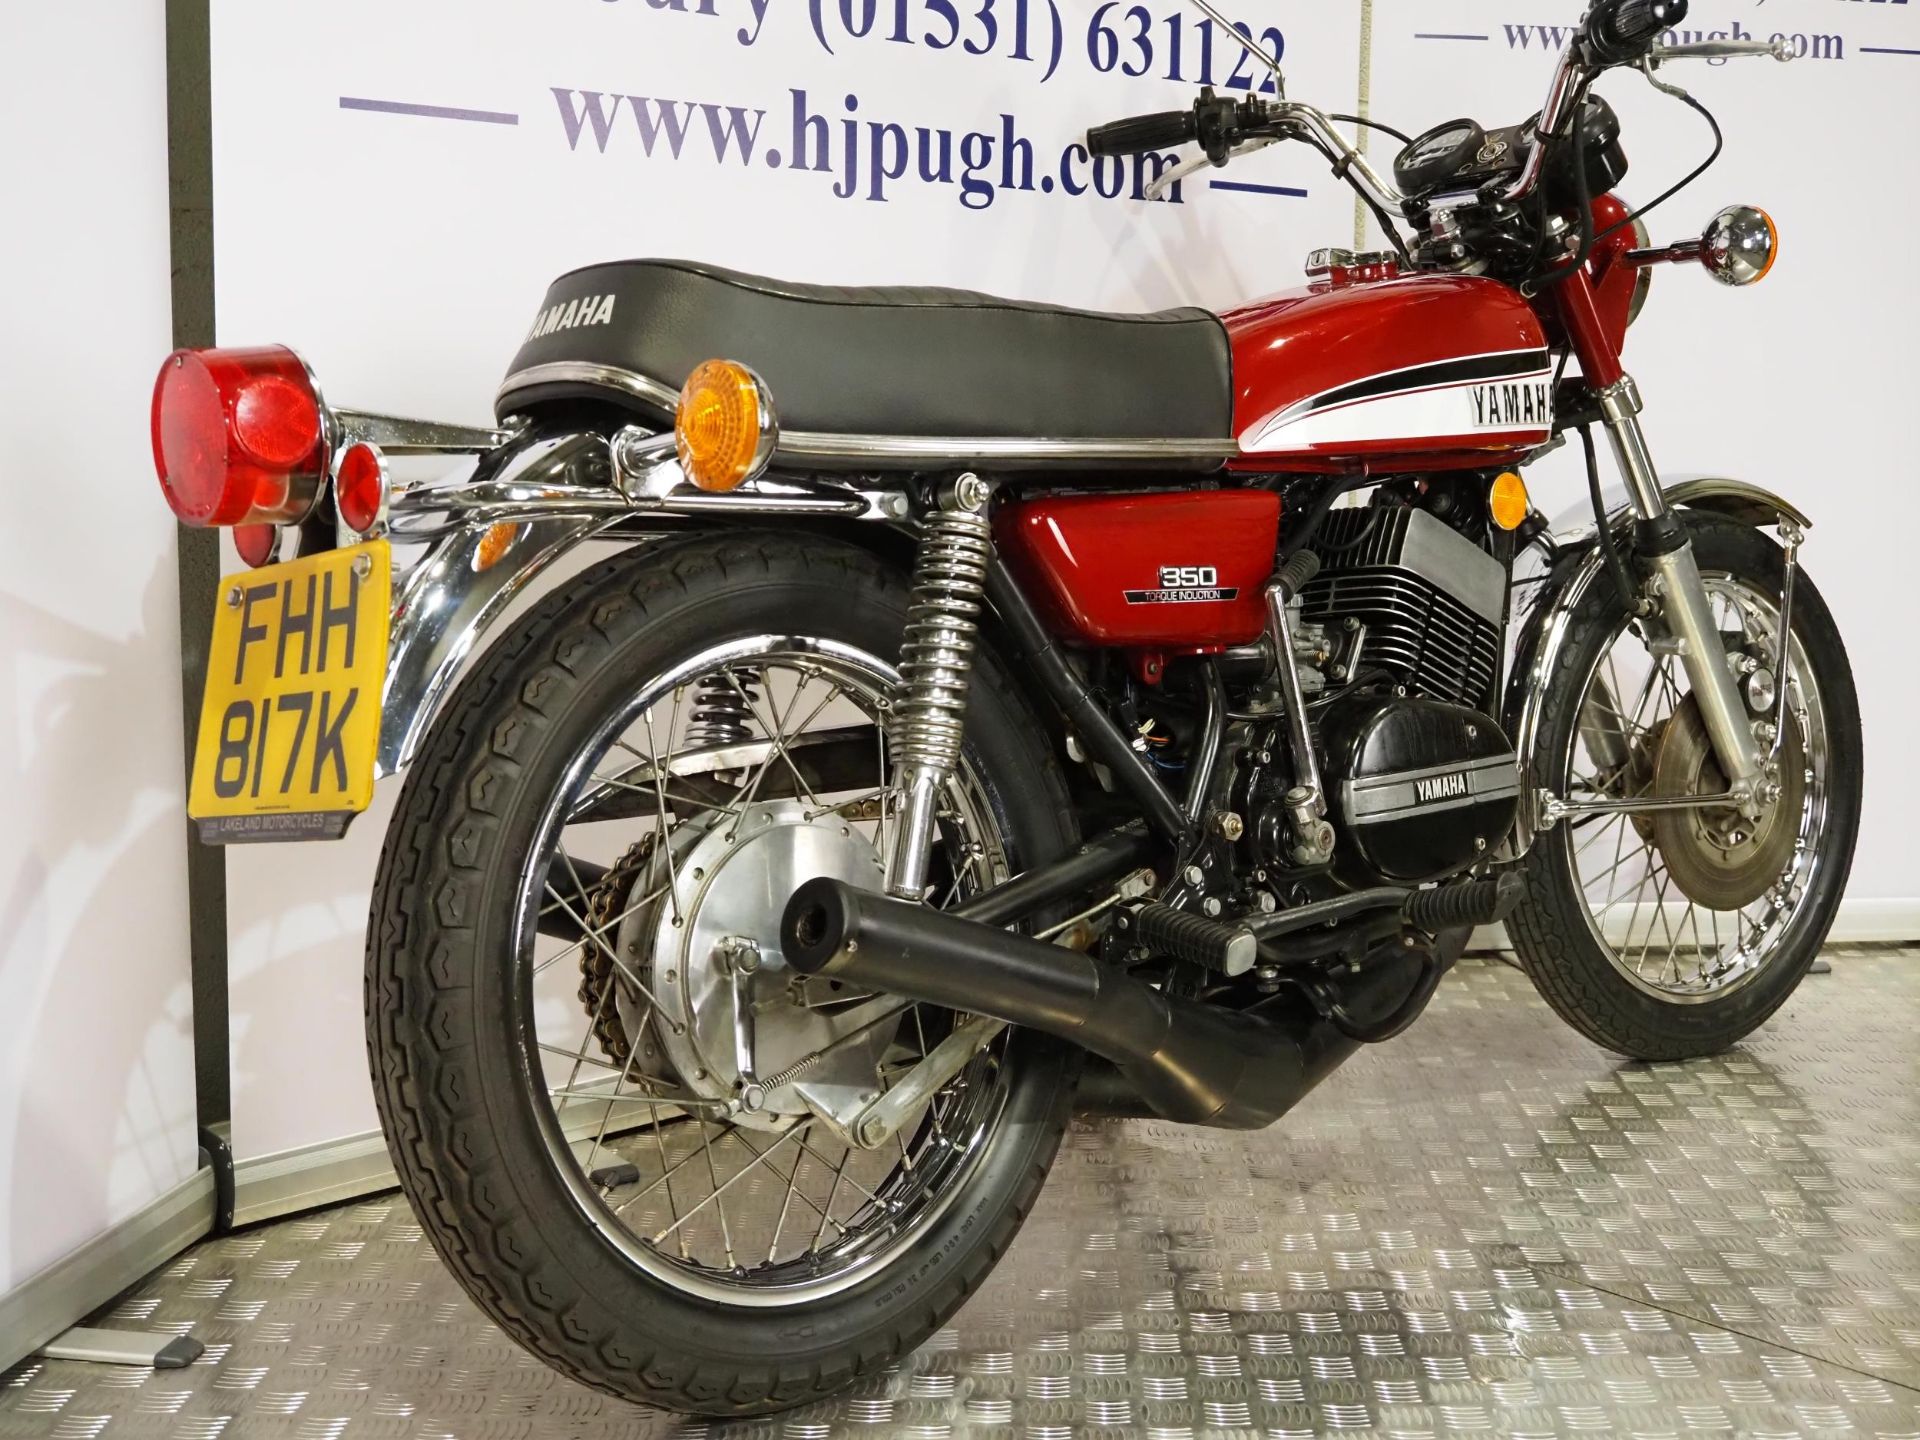 Yamaha RD350 motorcycle. 1972. 350cc. Frame No. 351108463 Engine No. 351108463 Runs and rides. MOT - Image 3 of 7